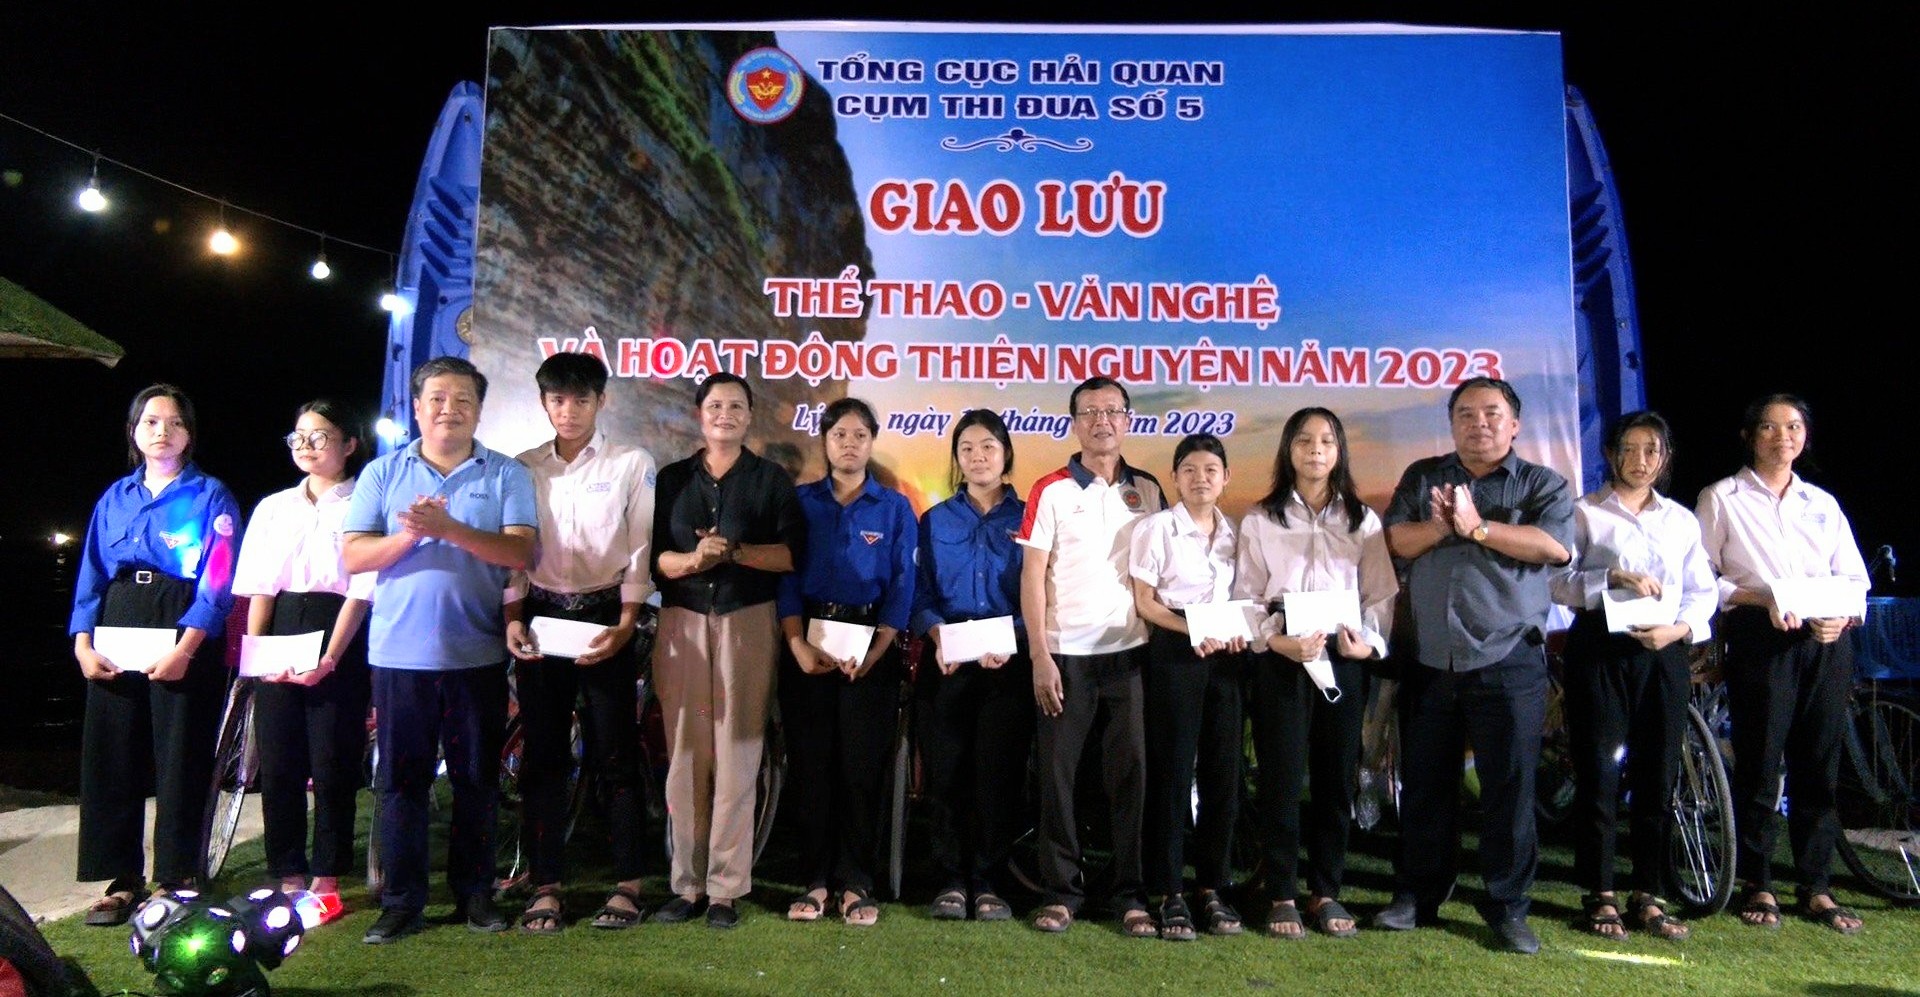 Cụm thi đua số 5, Tổng cục Hải quan tặng quà, xe đạp cho học sinh vượt khó ở đảo Lý Sơn